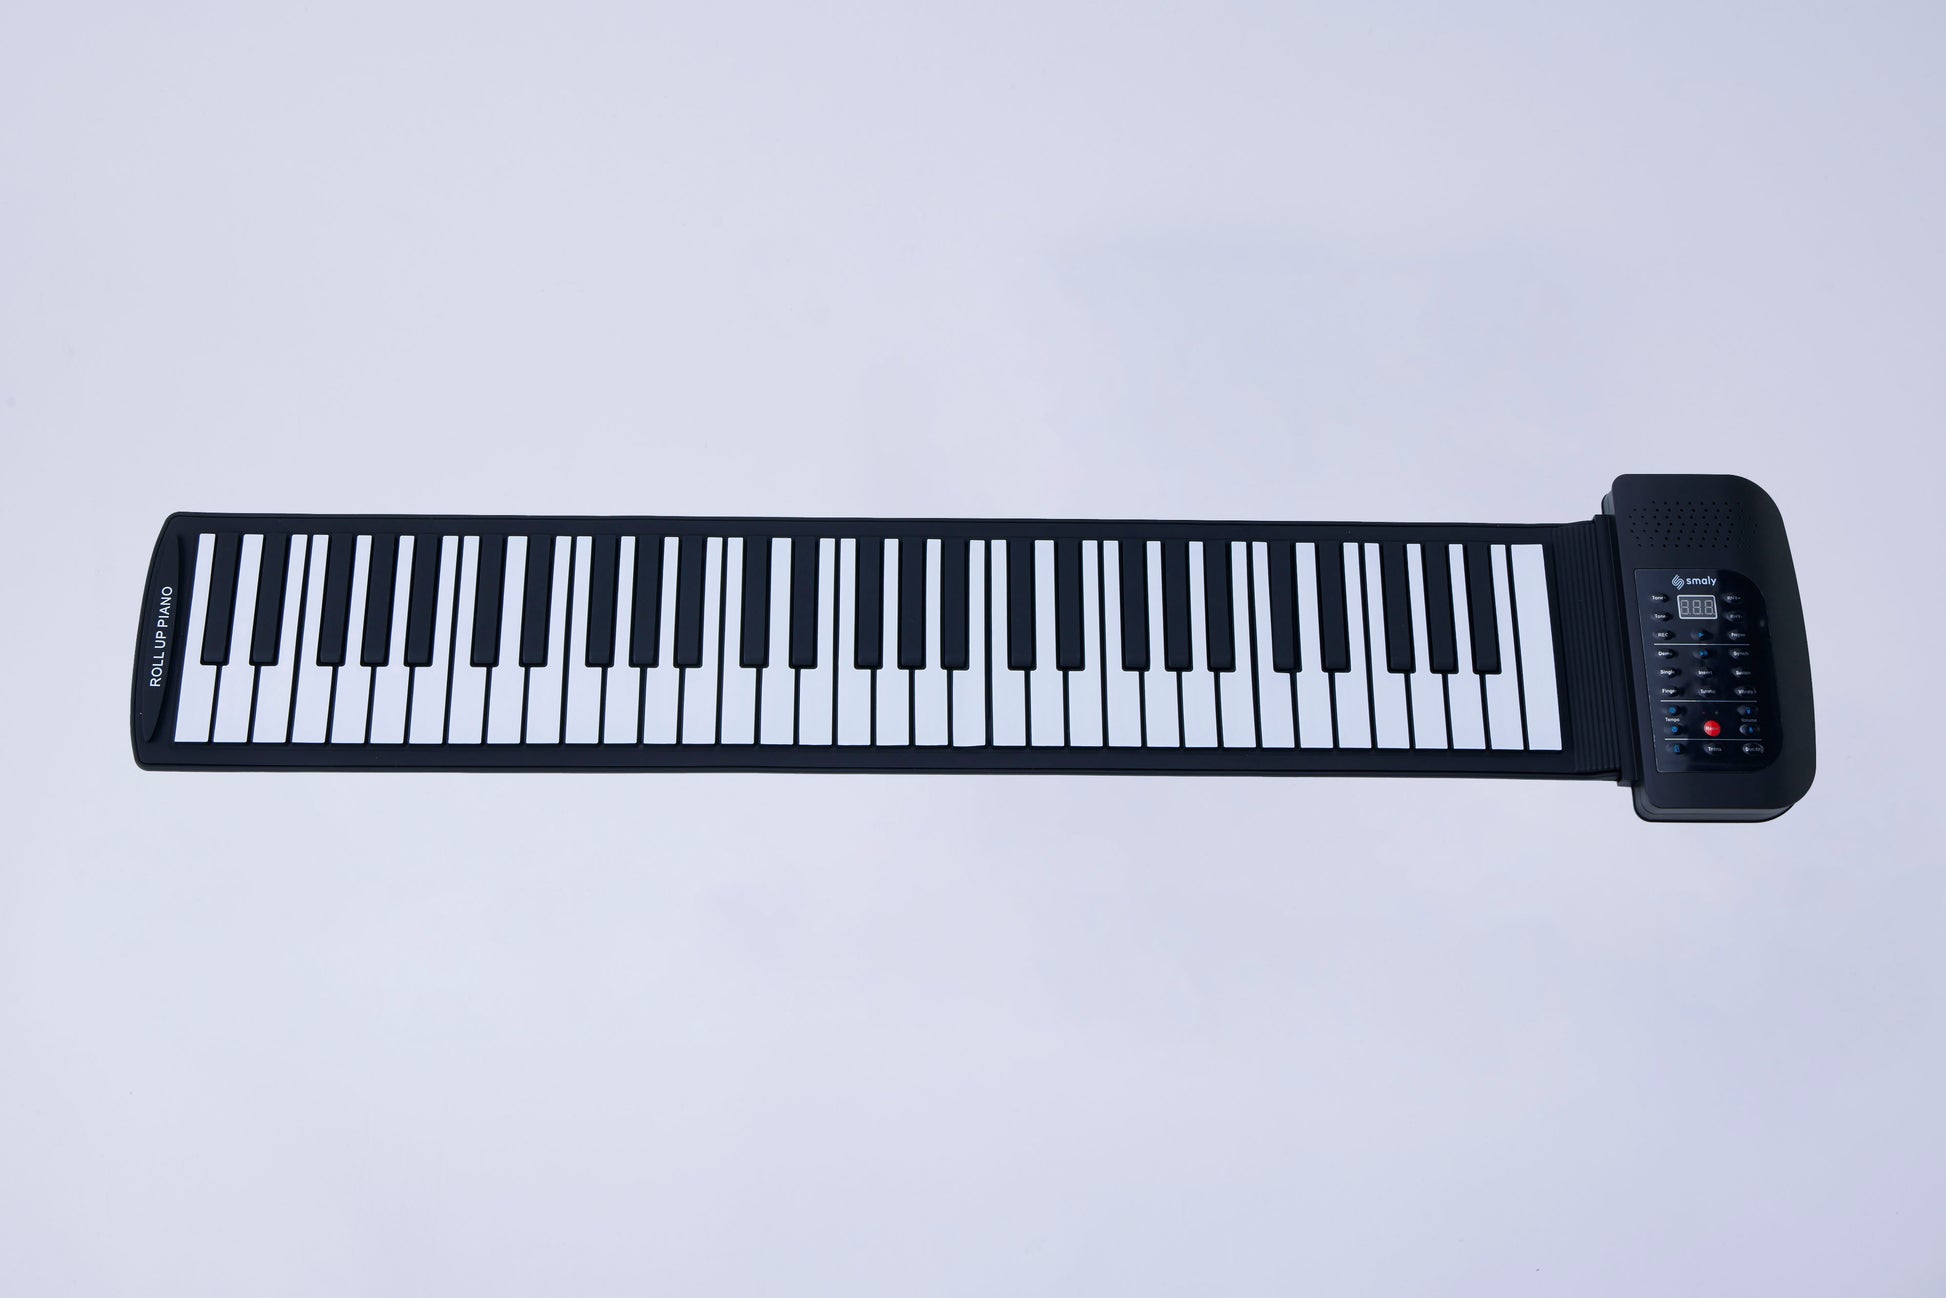 ロールアップピアノ61鍵盤